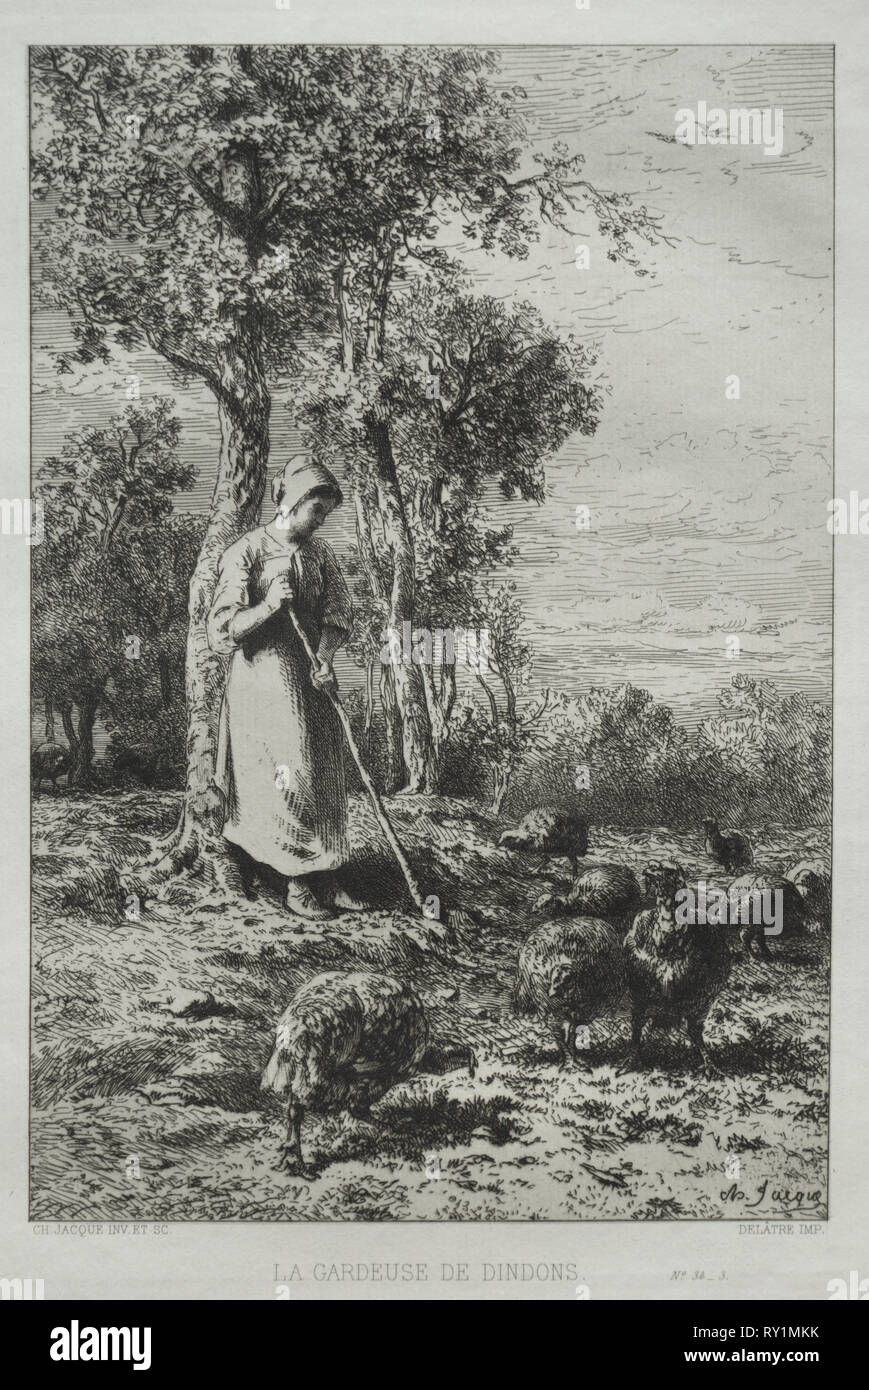 La Gardeuse de Dindons. Charles-Émile Jacque (French, 1813-1894). Etching Stock Photo